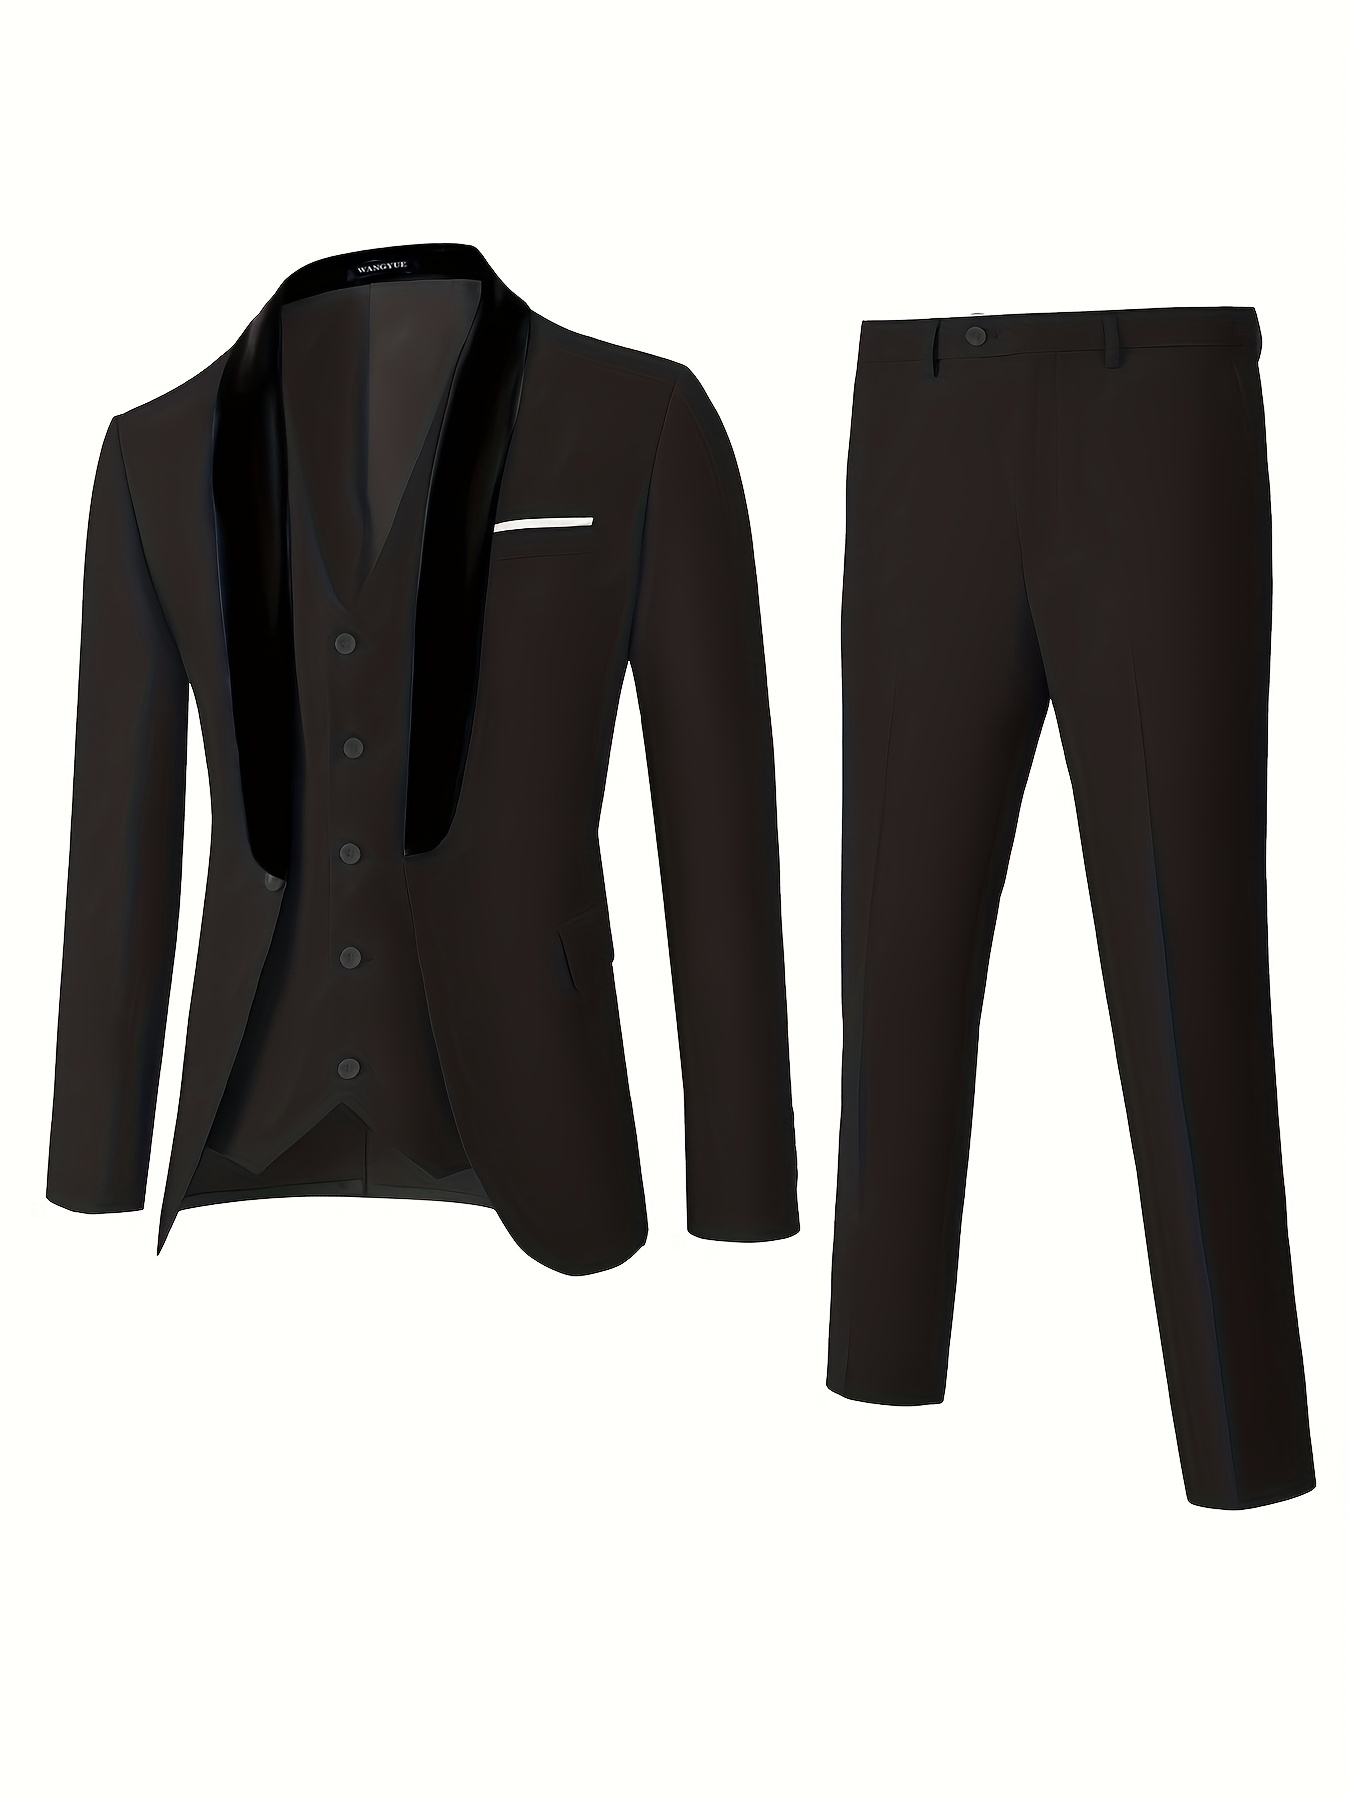 Men's 3 Pieces Suit Blazers Jacket Vest Pants Sets Slim Fit Formal